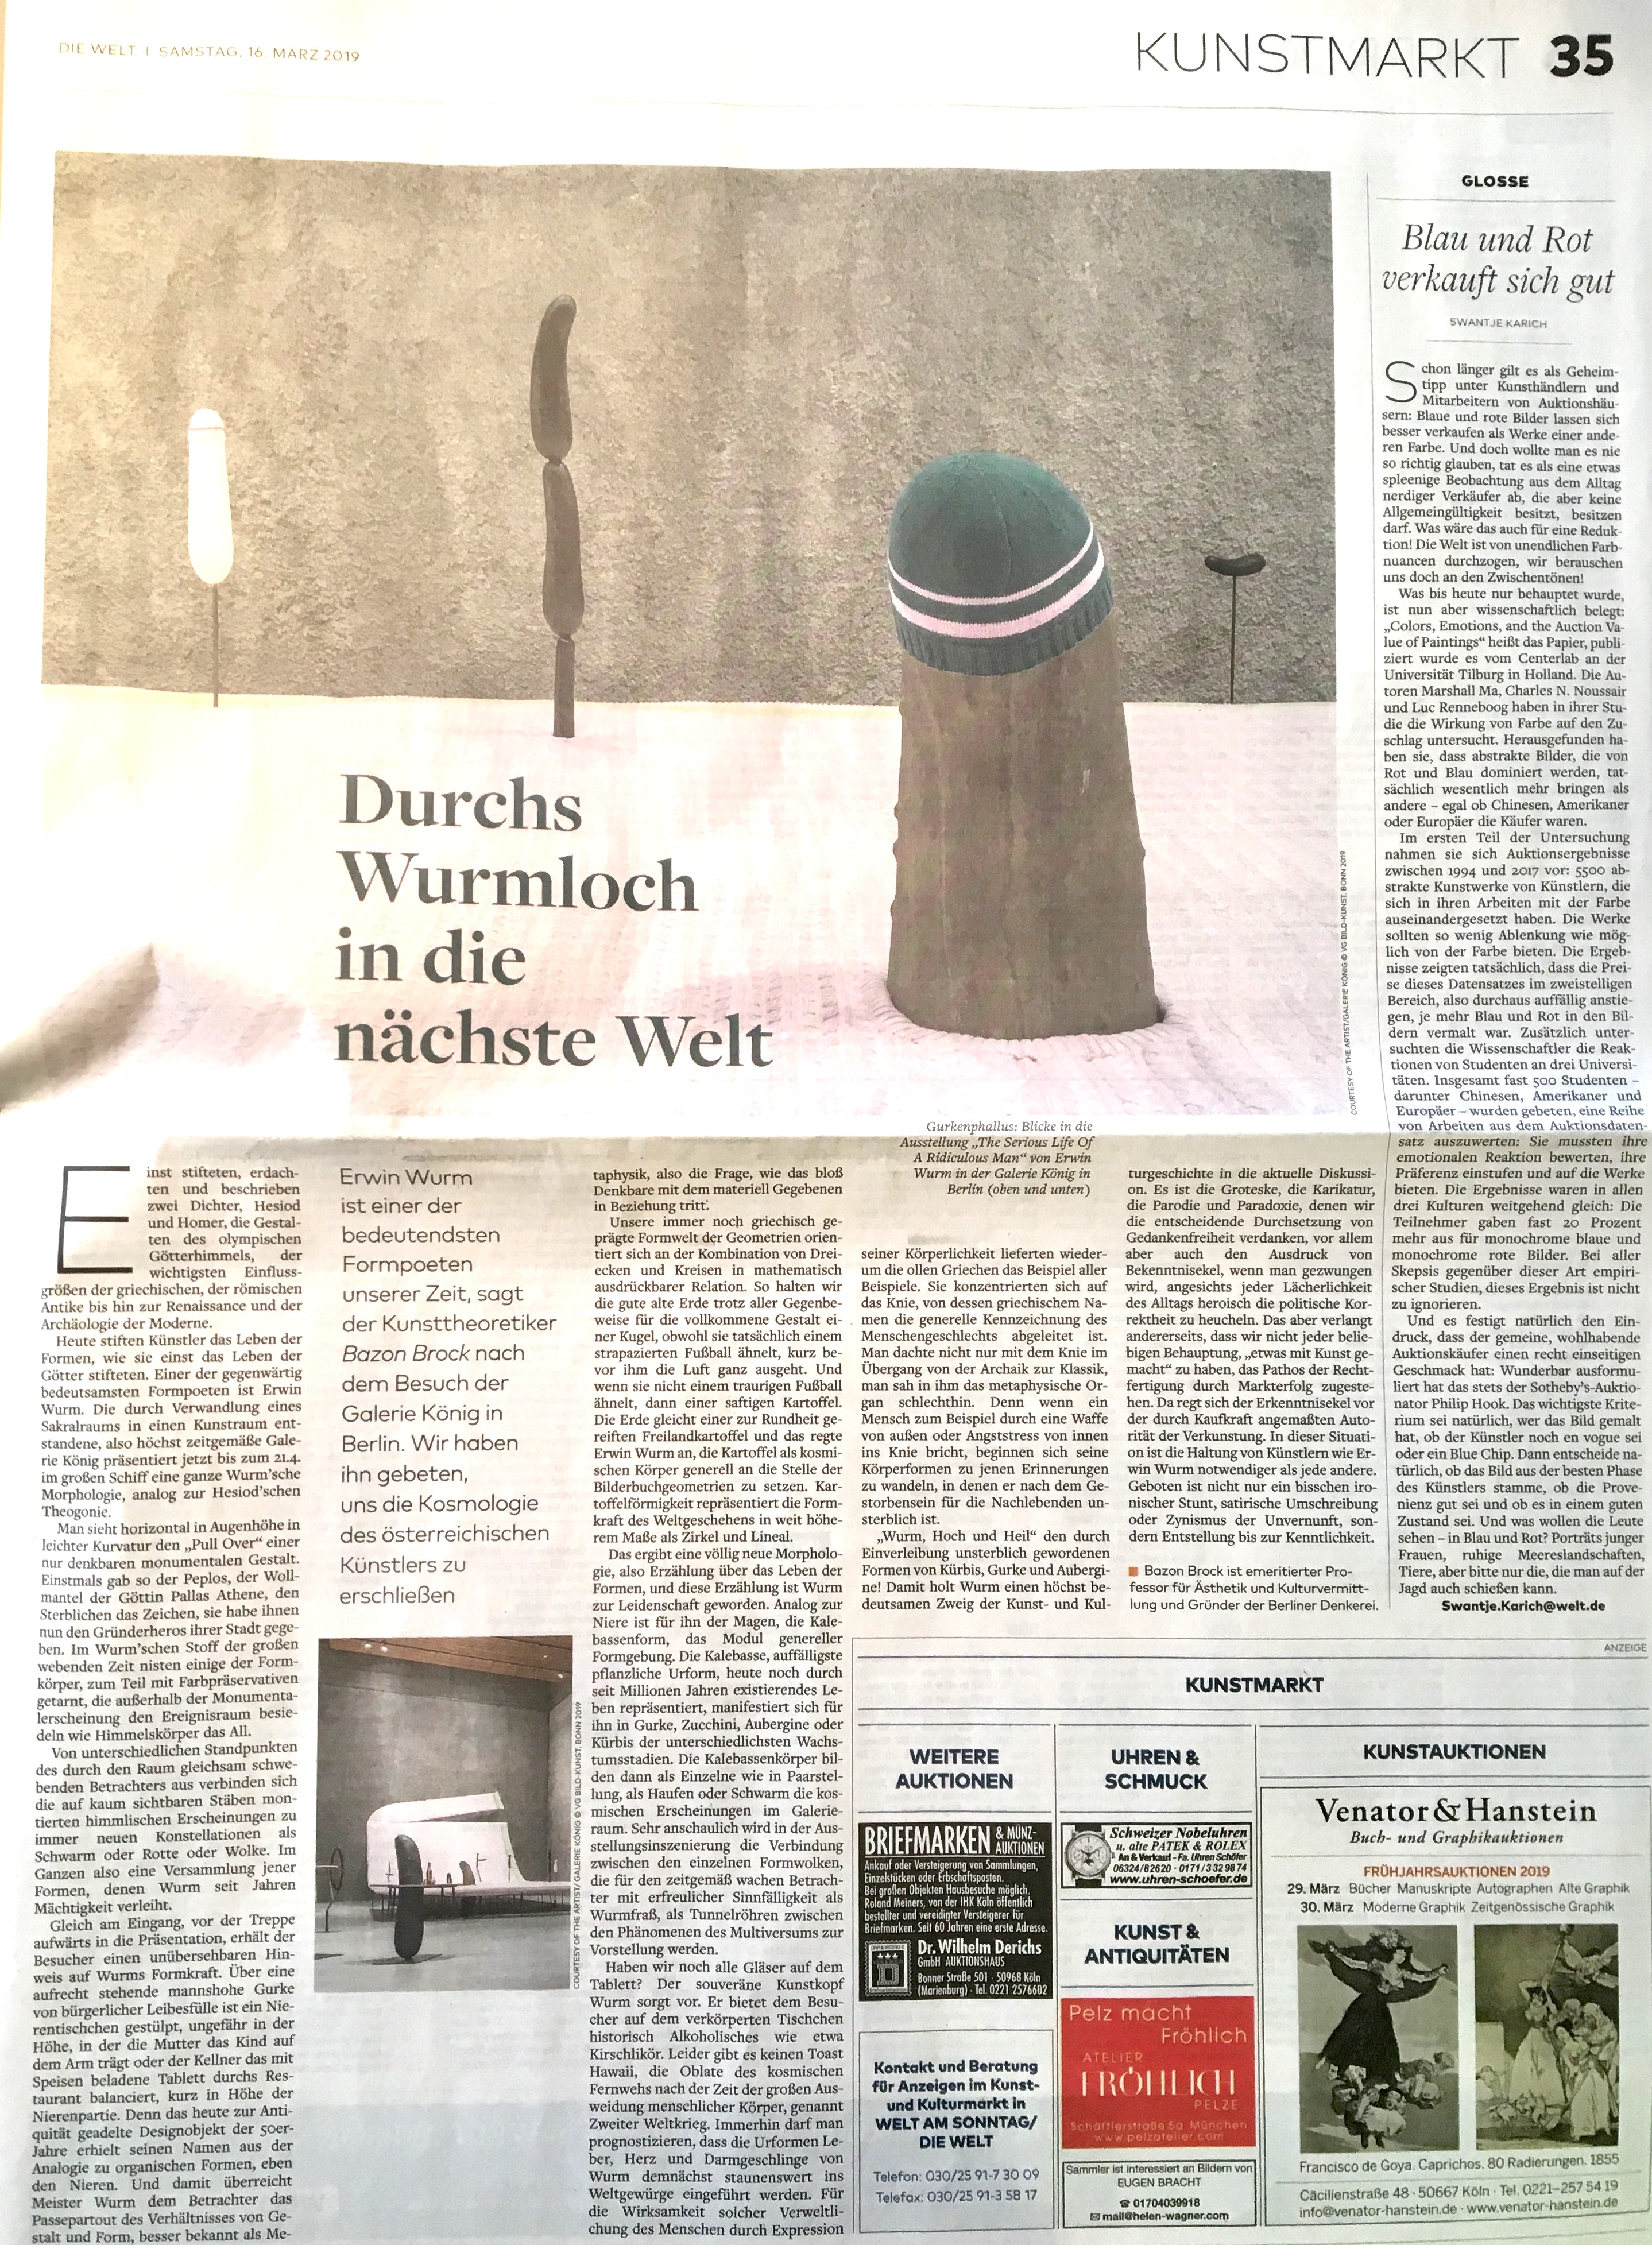 Durchs Wurmloch in die nächste Welt, Bild: Die Welt, 16.03.2019.